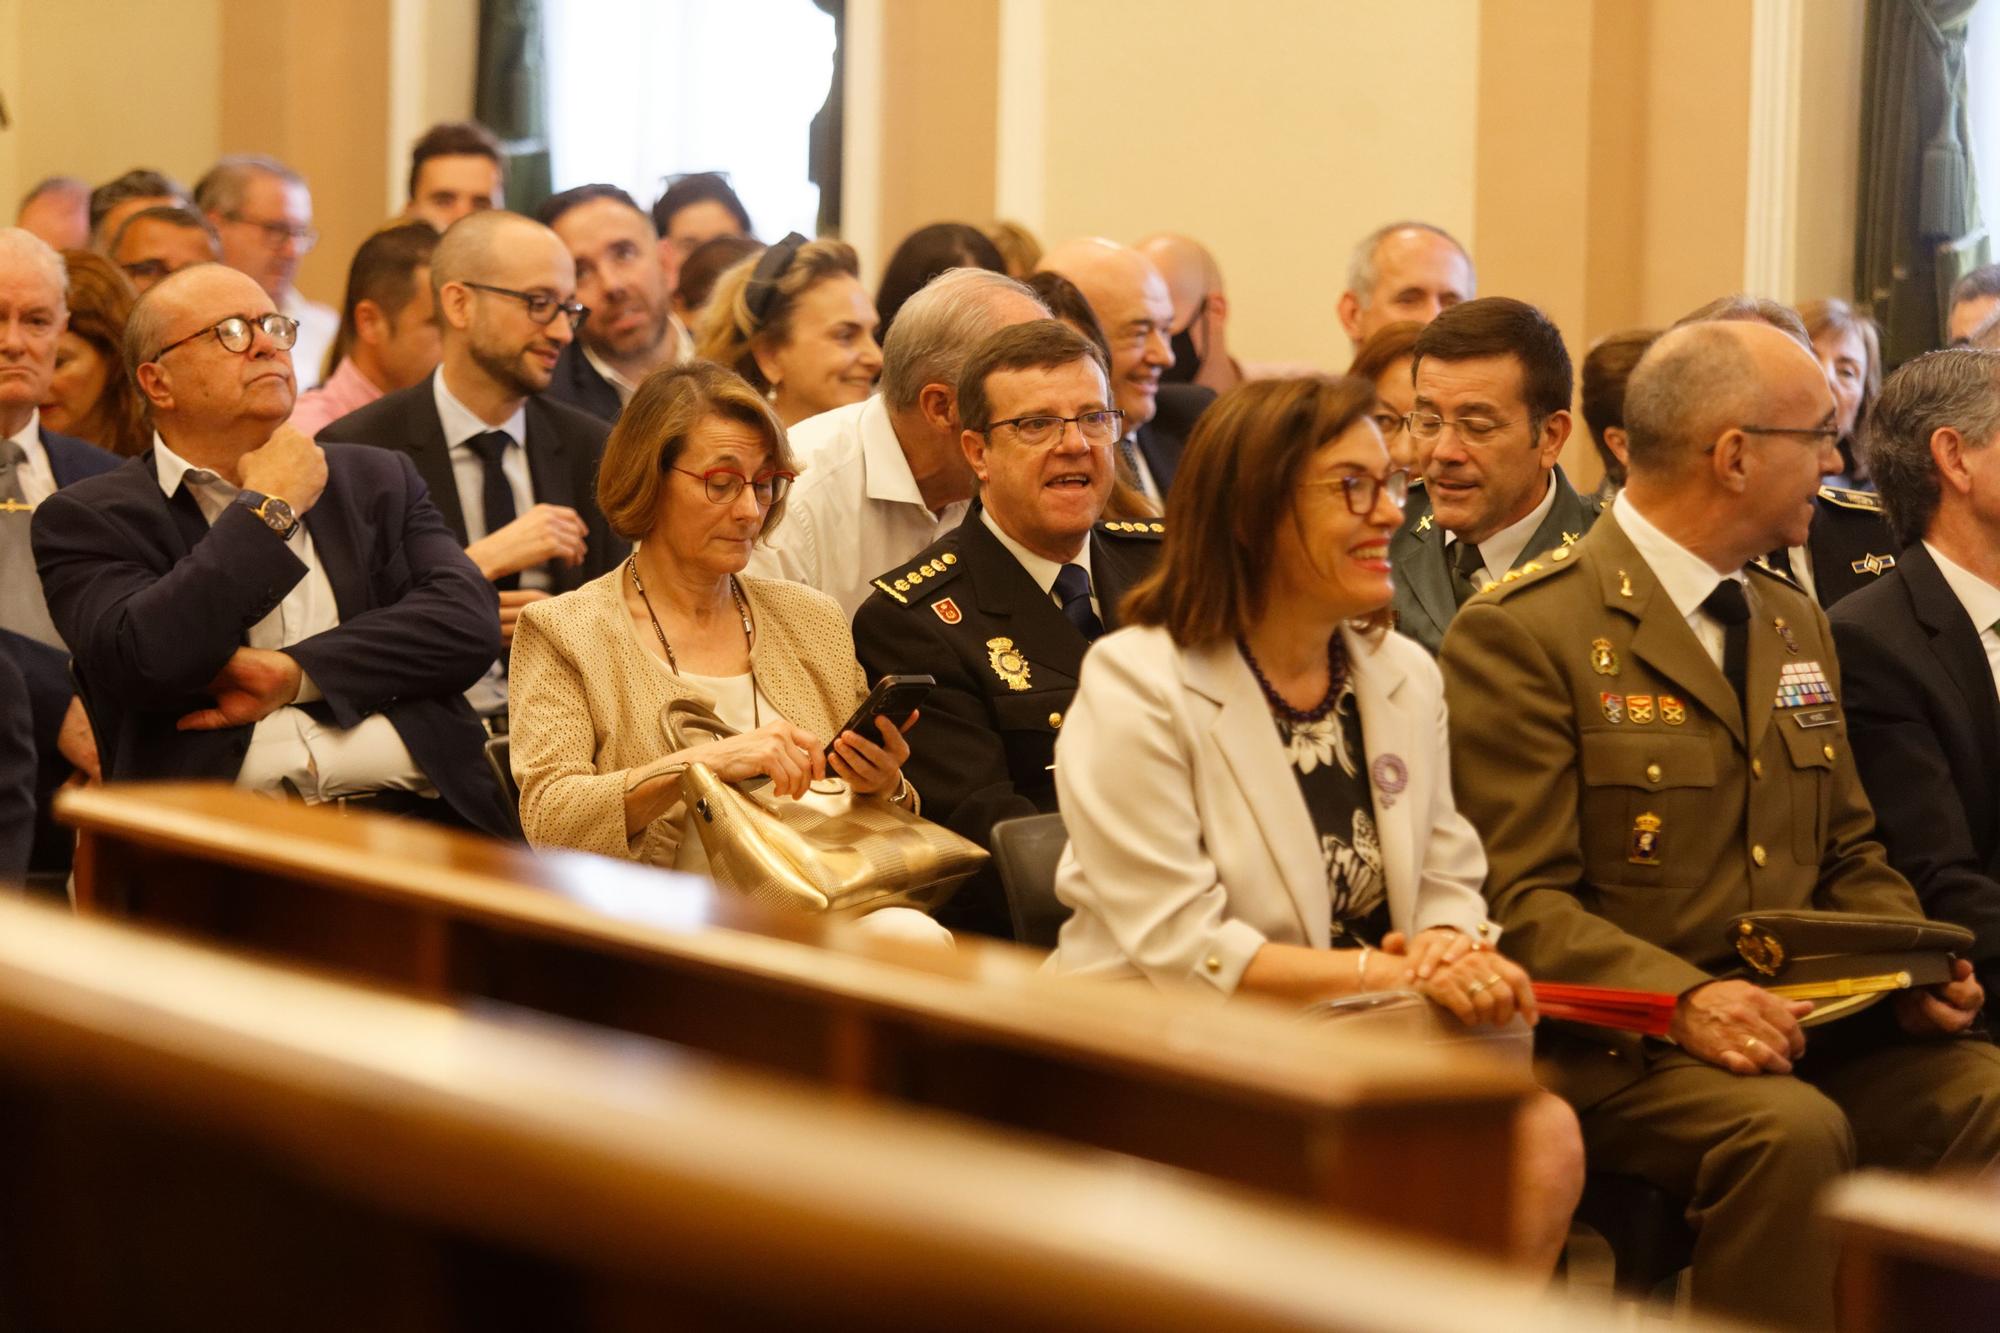 Imágenes: Begoña Carrasco (PP) toma posesión como nueva alcaldesa de Castelló